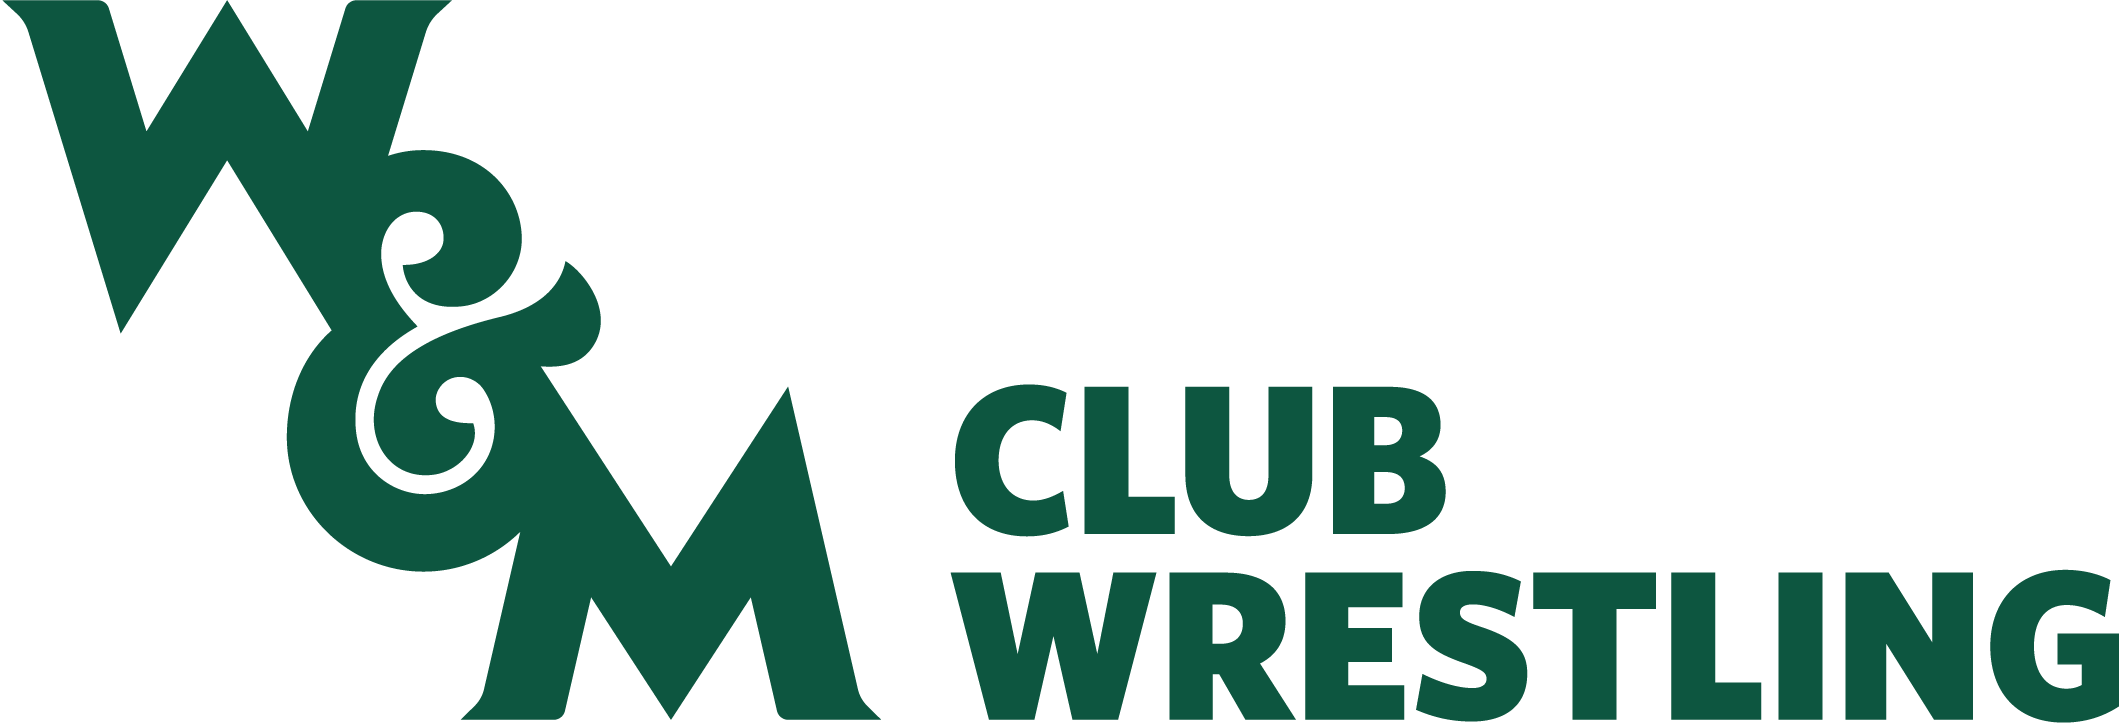 Wrestling Club Logo